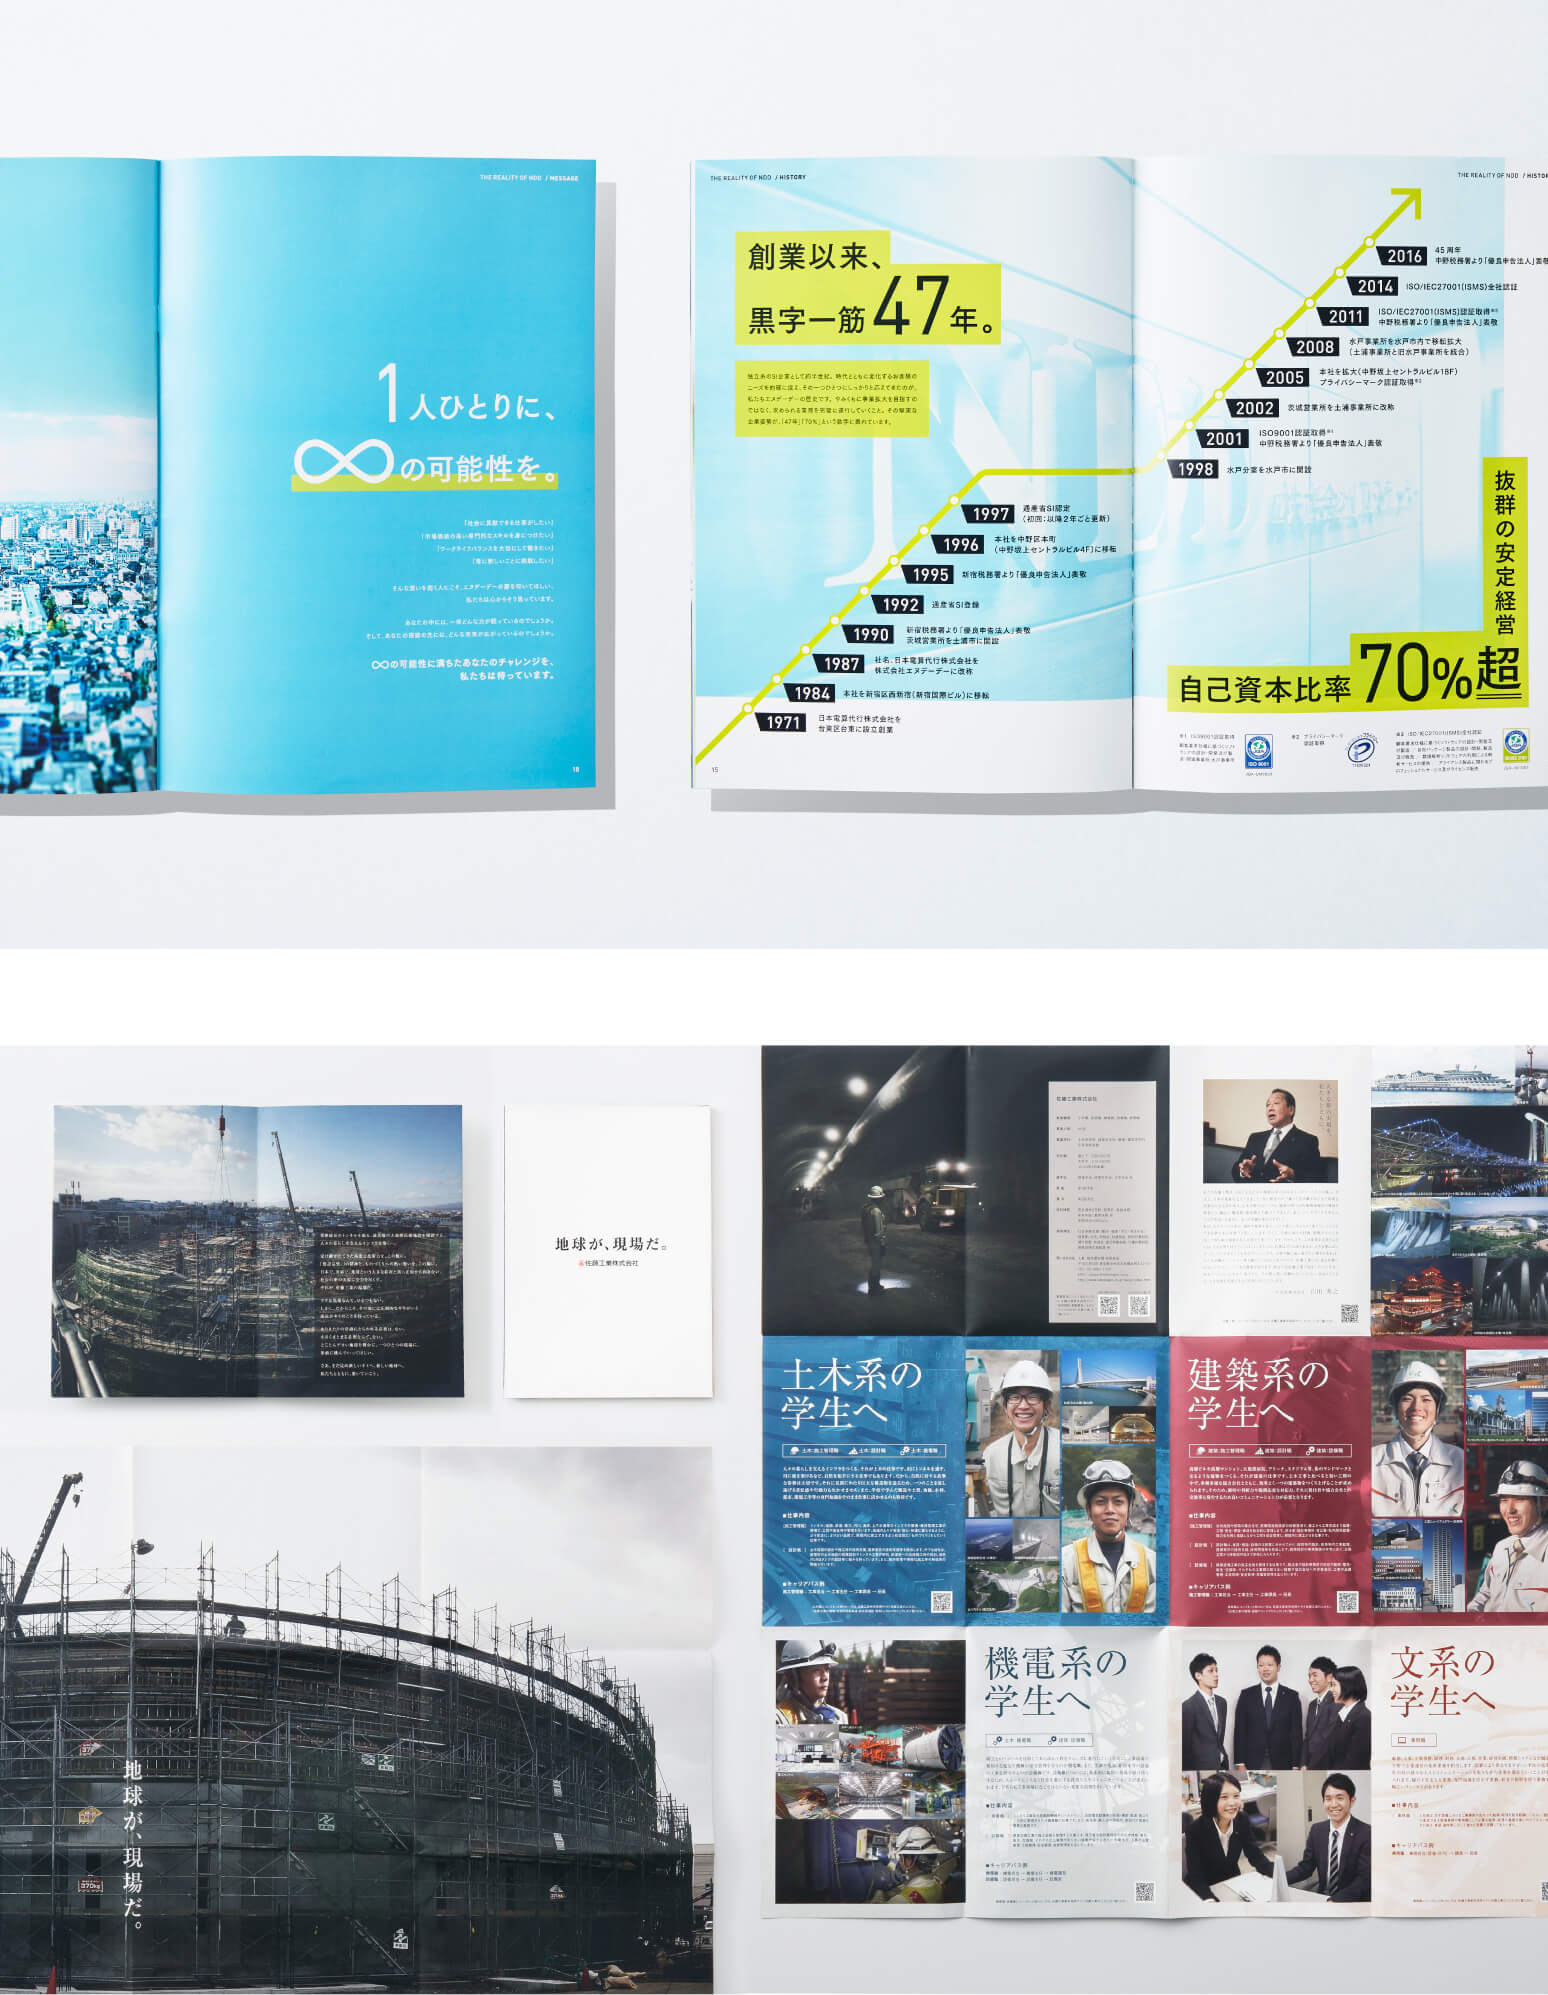 パンフレット制作 | パンフレット・カタログ・会社案内・ブランドブックのことなら、デザイン制作・Web ホームページ制作会社 ドットゼロ |  ドットゼロのサービス | 東京都のデザイン制作・Web制作会社 株式会社ドットゼロ